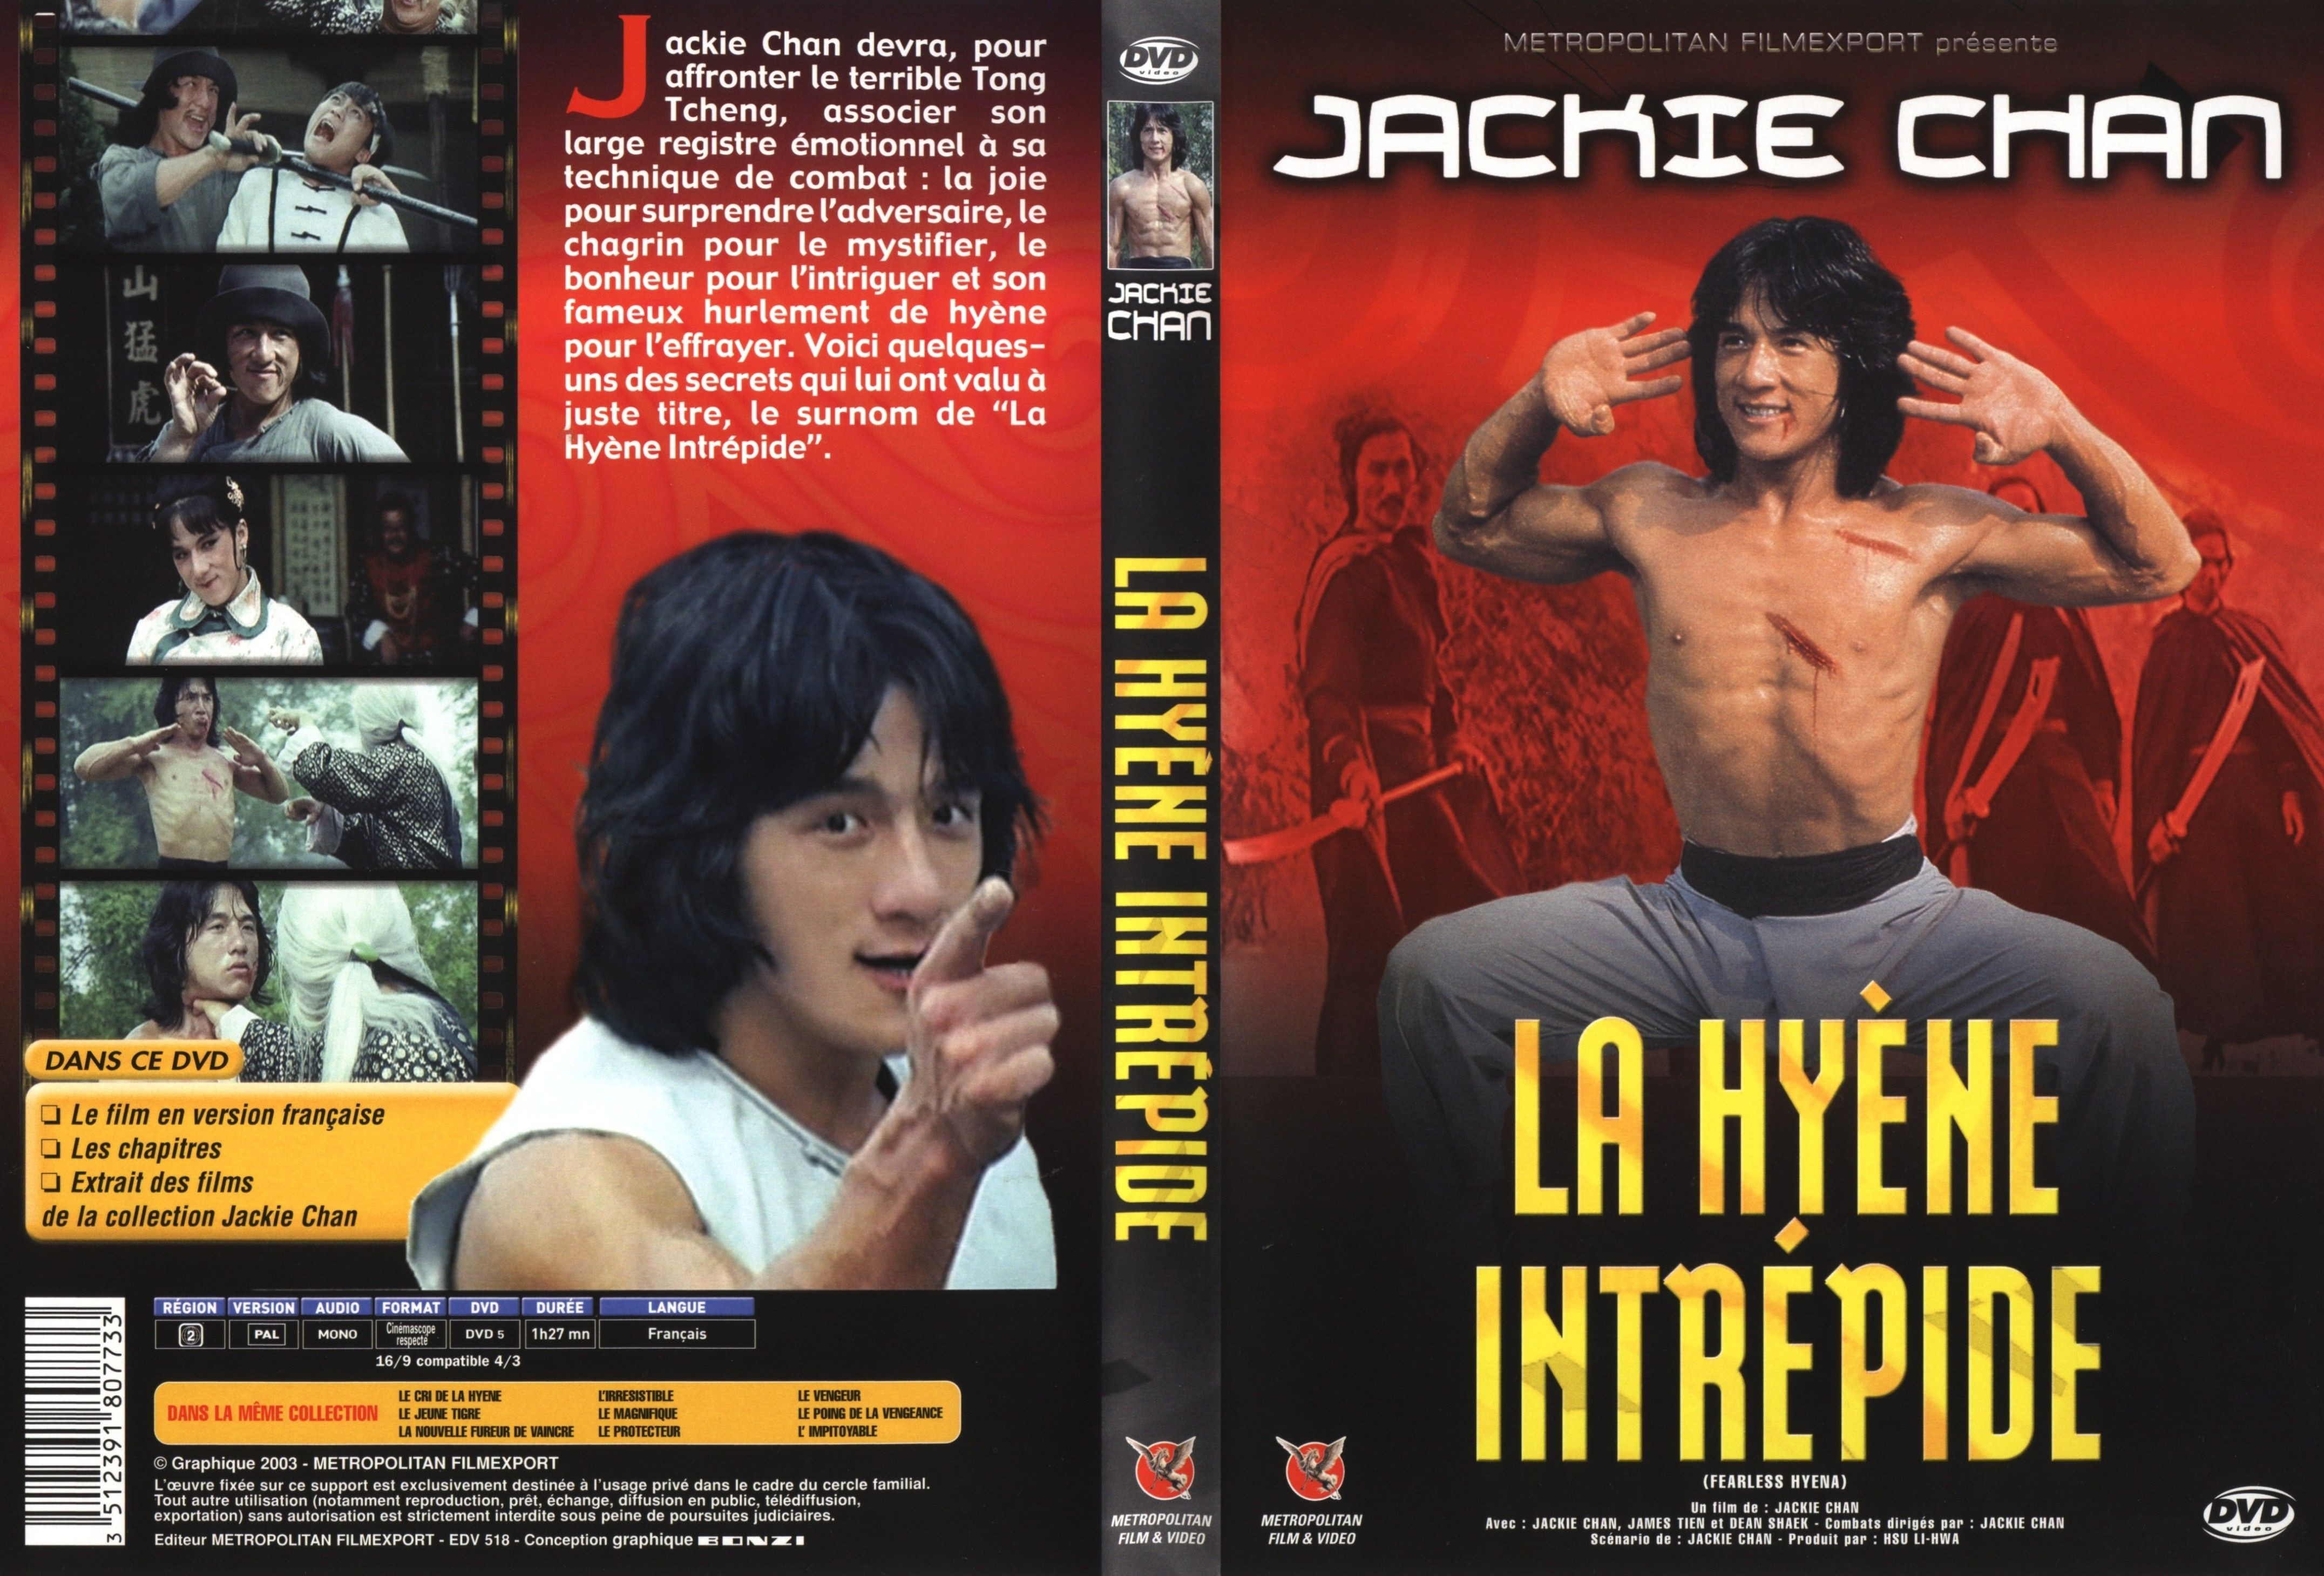 Jaquette DVD La hyne intrpide v2